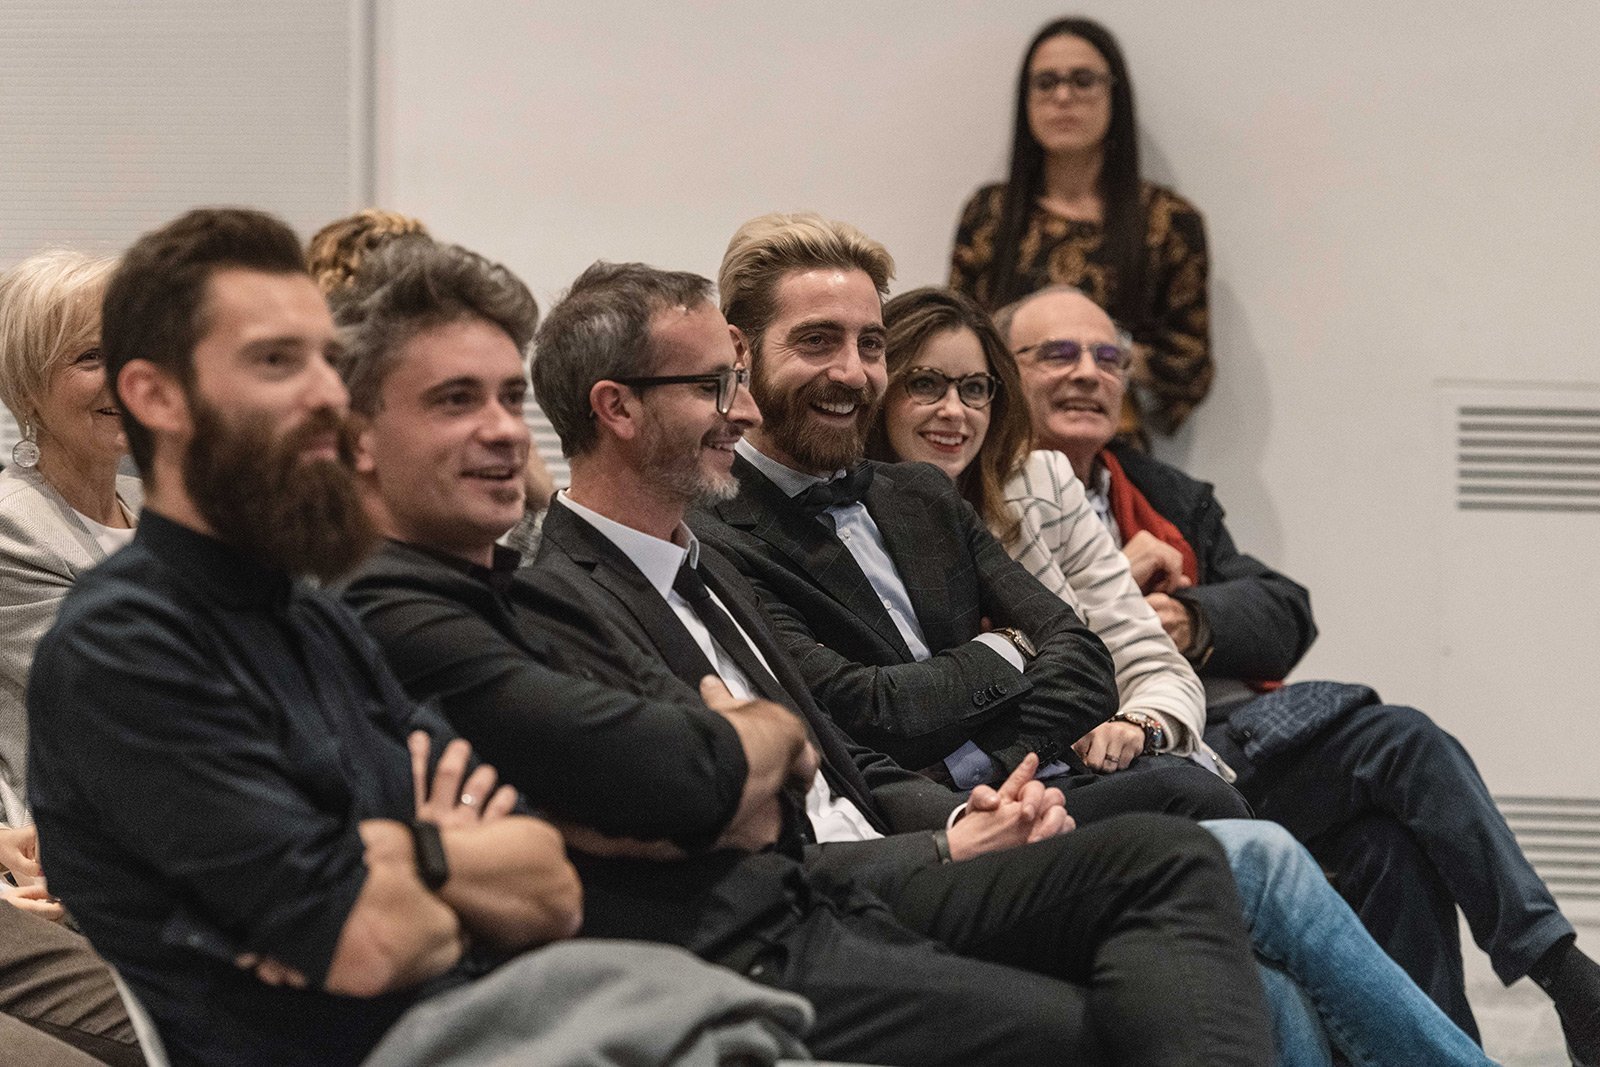 i segreti della luce di francesco lorenzi presentato alla Triennale di Milano